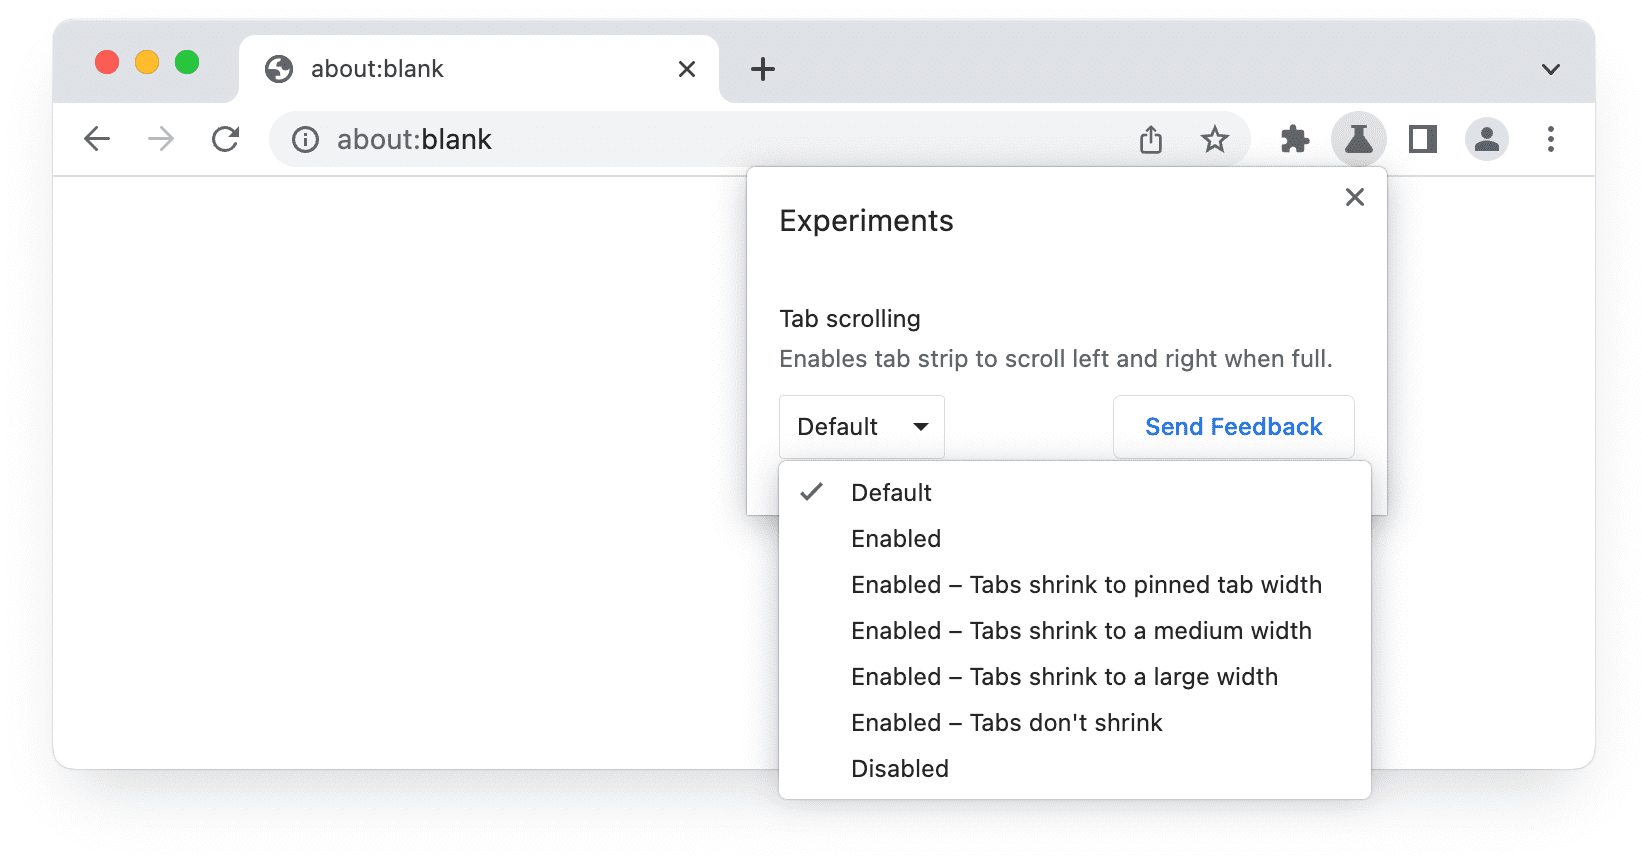 Chrome बीटा में, एक्सपेरिमेंट के यूज़र इंटरफ़ेस (यूआई) का स्क्रीनशॉट, जिसमें टैब स्क्रोल करने के विकल्प दिख रहे हैं.